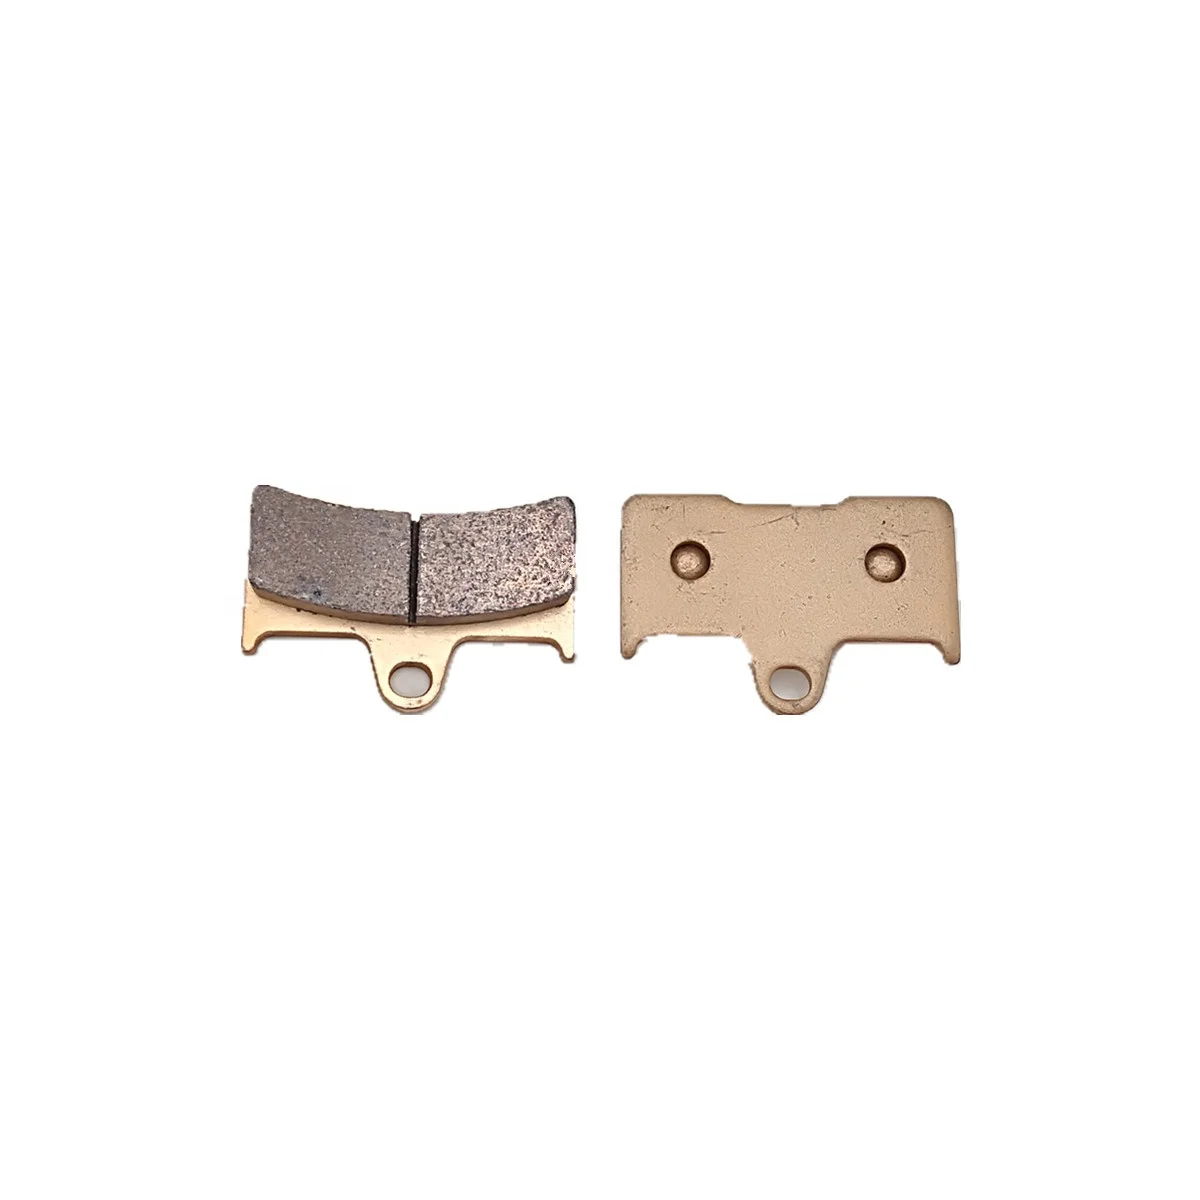 

Brake Pad Kit (copper base) 5KM-W0046-00-00 5KM-W0046-01-00, Picture shown